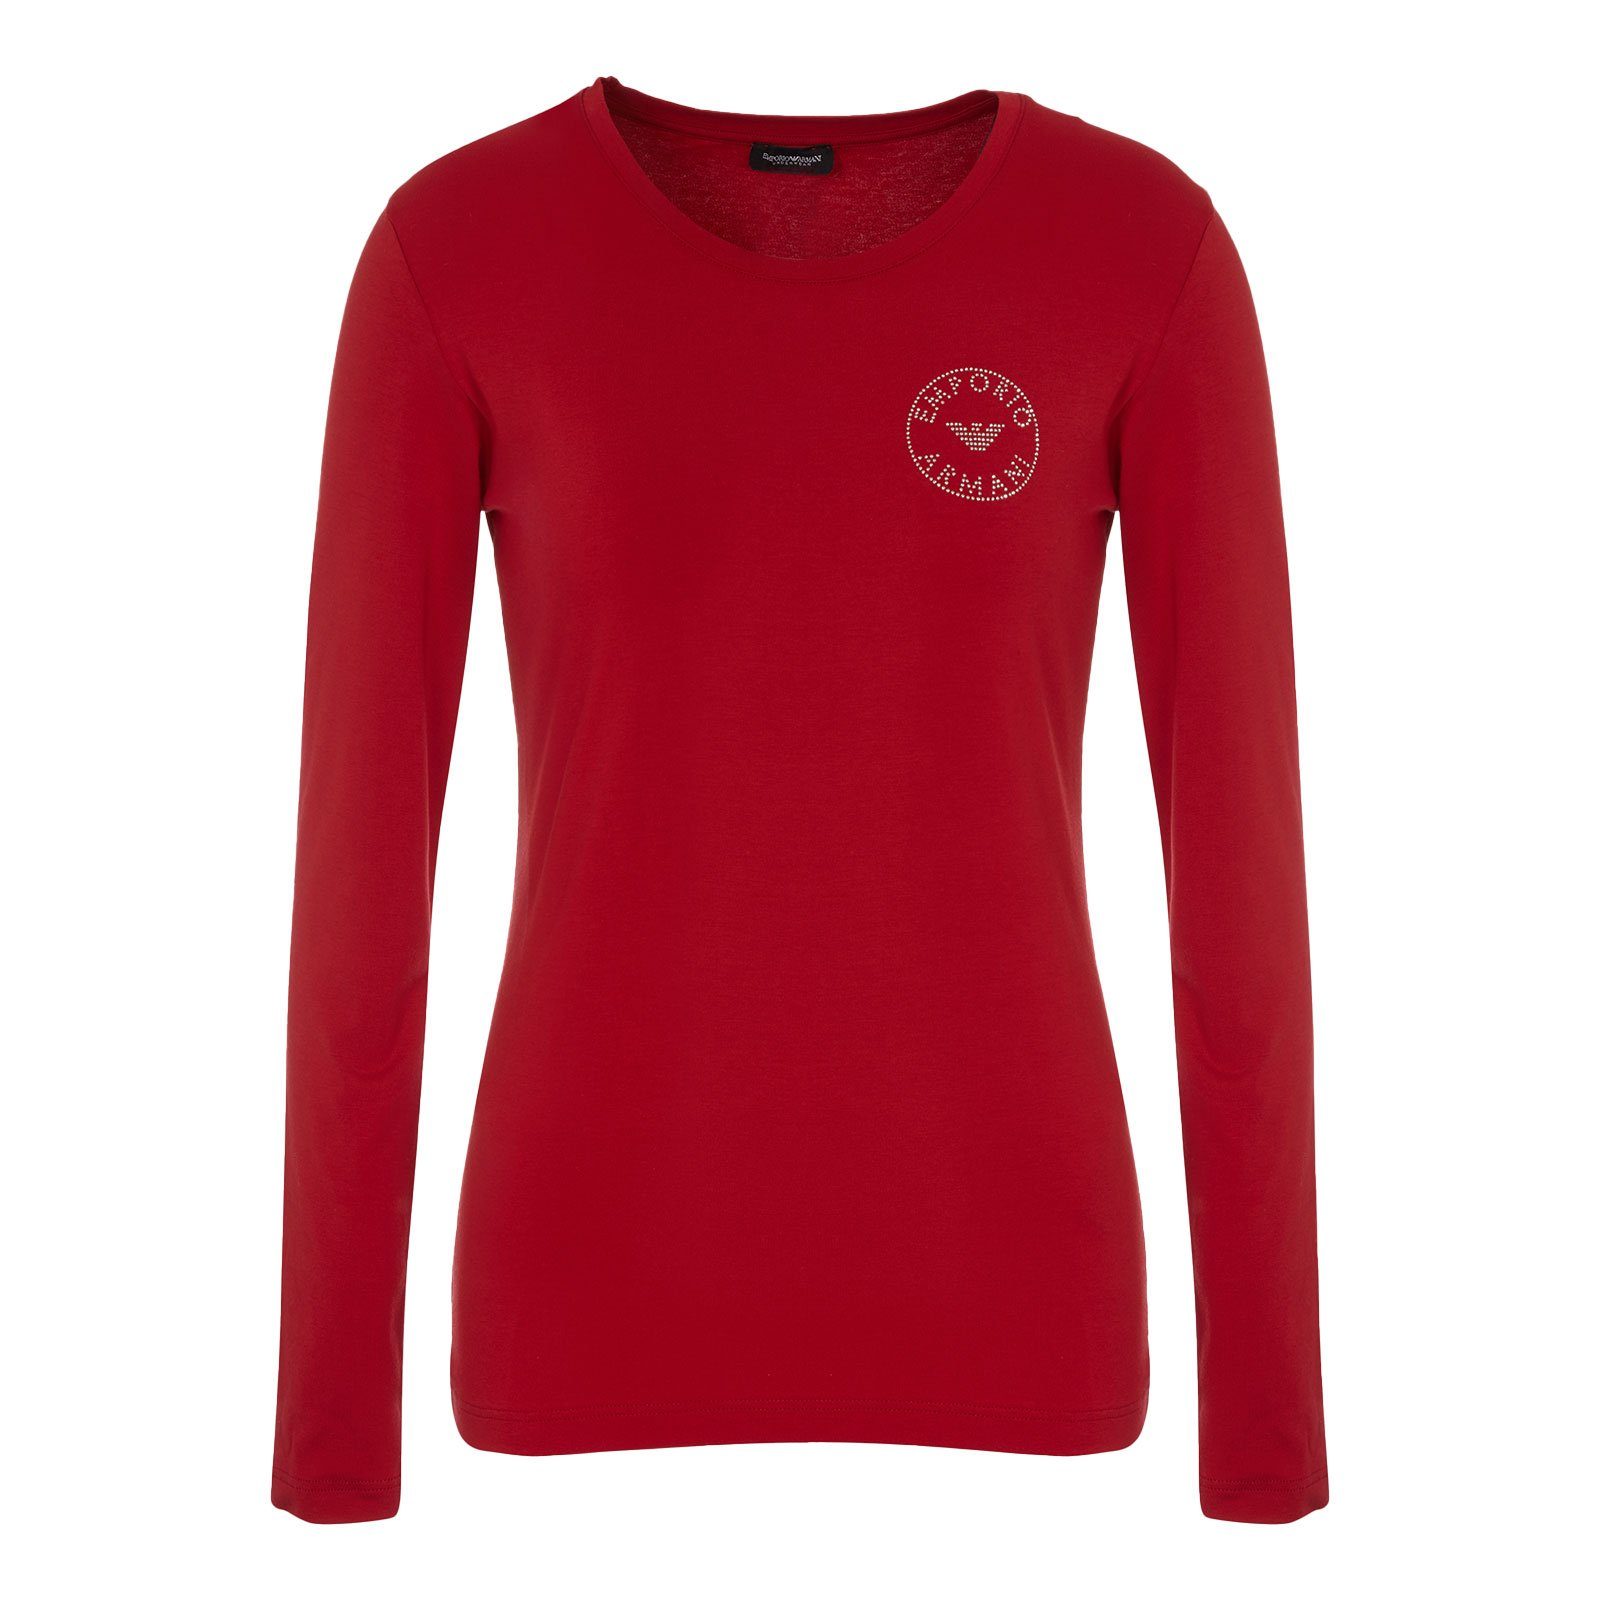 Emporio Armani T-Shirt L/S Round Neck mit Markenschriftzug und Markenlogo aus Strasssteinen auf der Brust 00173 ruby red